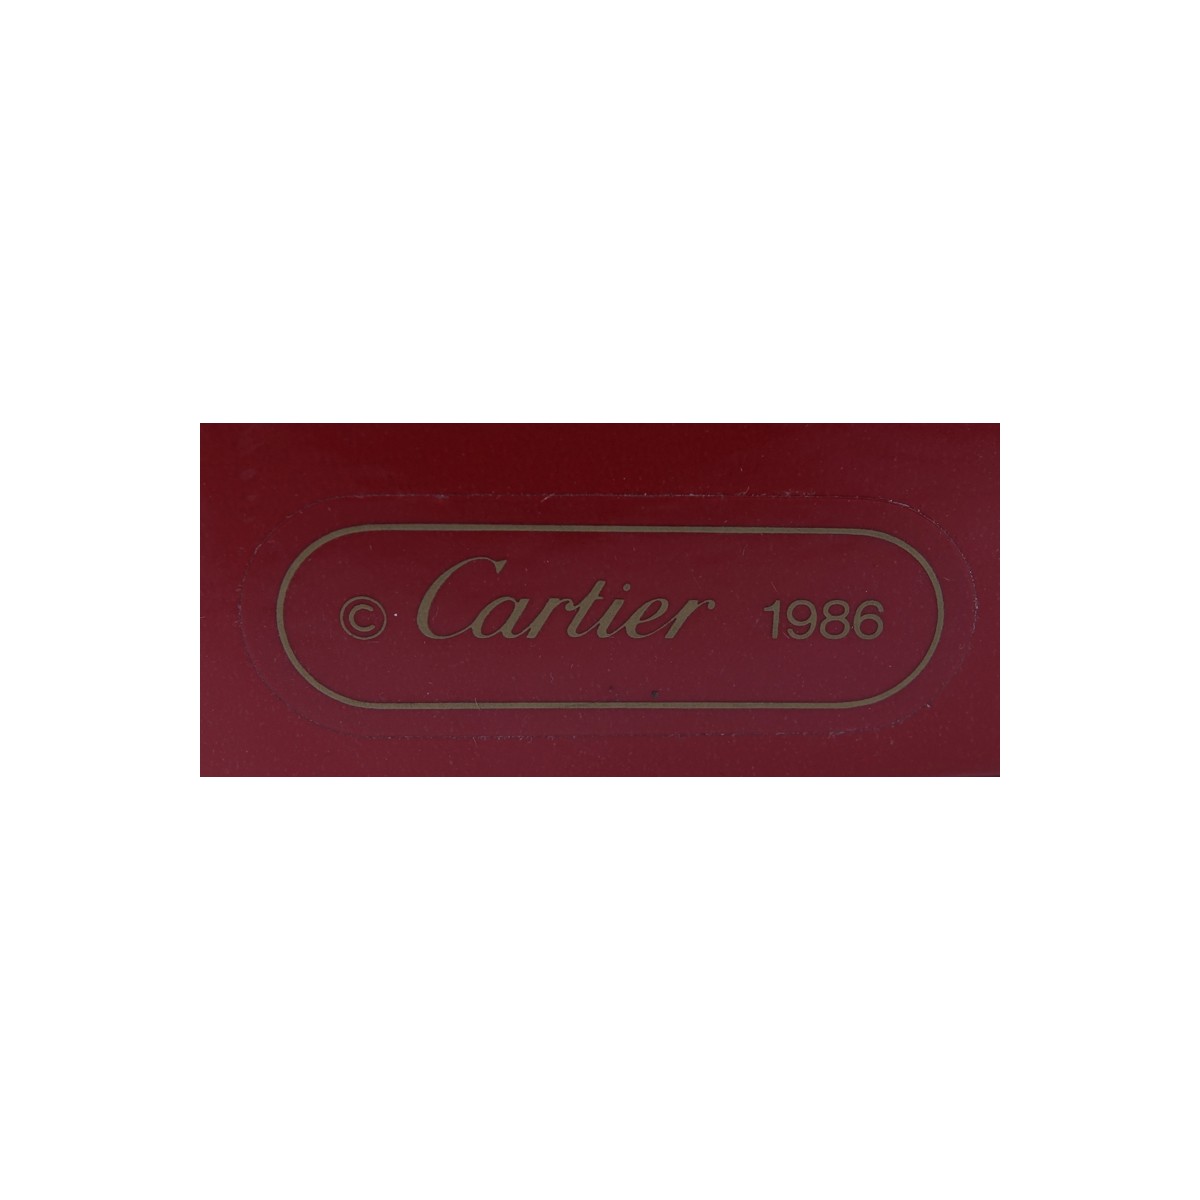 Twelve (12) Cartier "La Maison De Louis Cartier" Flat Cream Soup Bowl And Saucer Sets. In 2 sets of